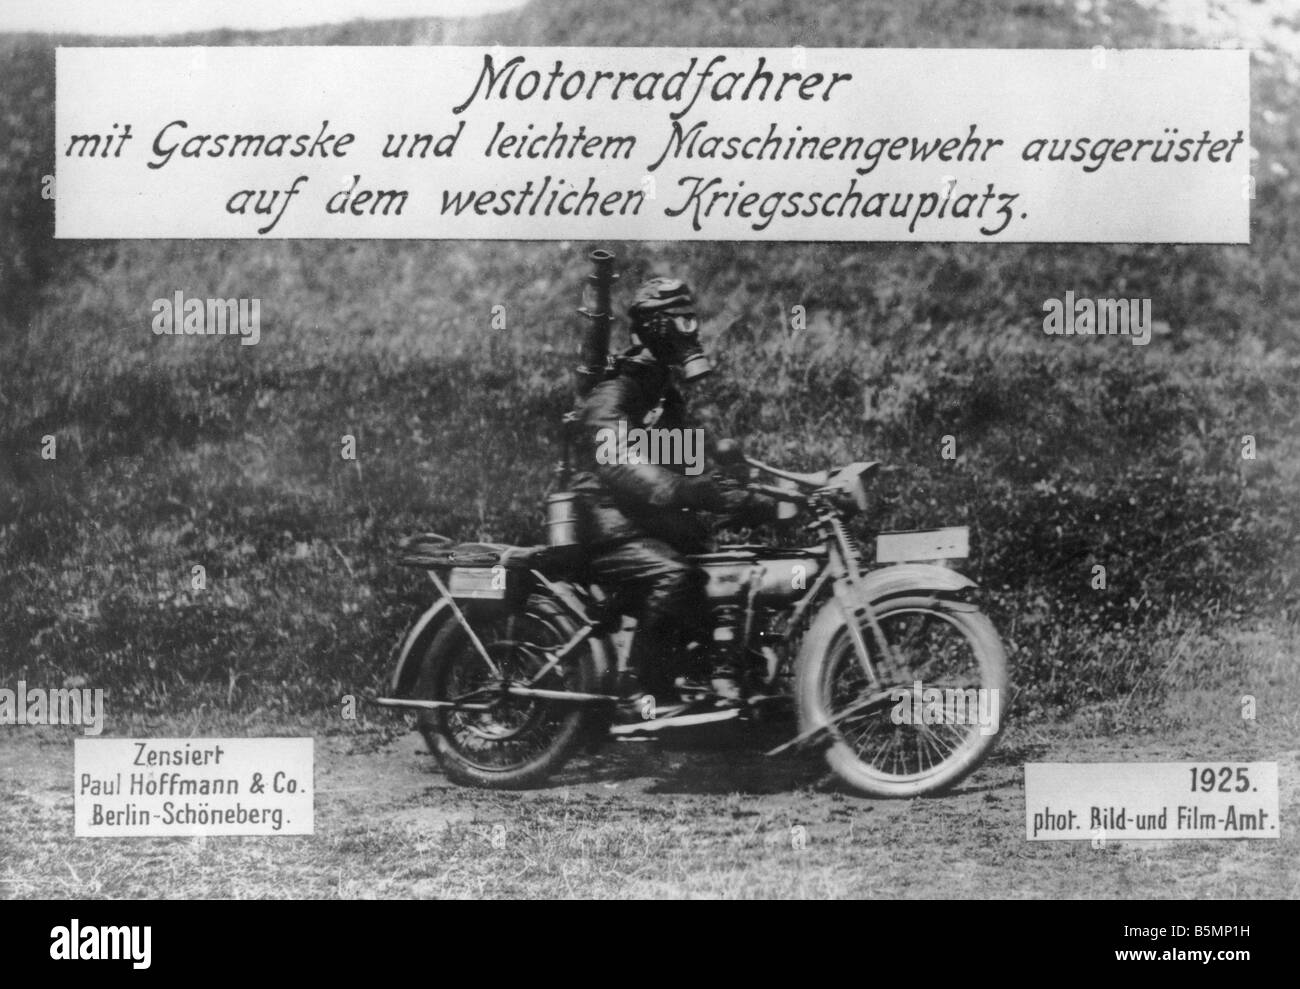 Motociclista a fronte occidentale I Guerra Mondiale 1914 18 fronte occidentale motociclista con marchio del gas e la luce della macchina fotografica di pistola Foto Stock